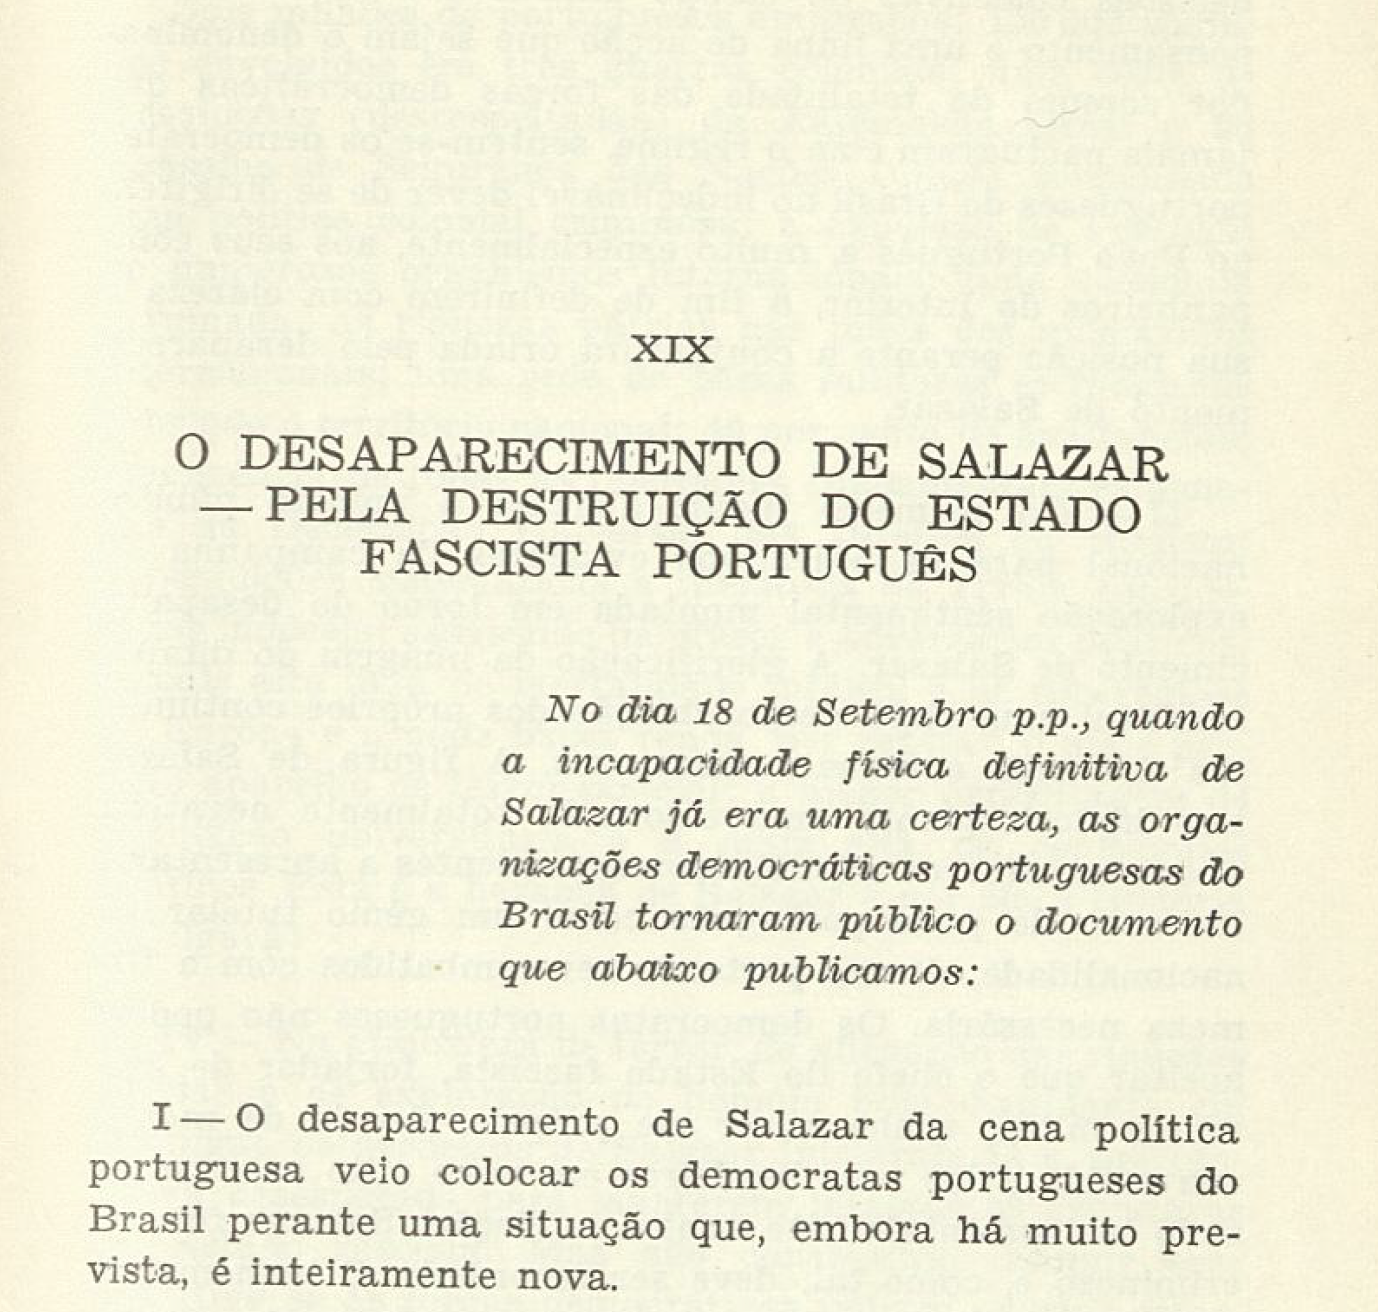 O desaparecimento de Salazar - pela destruição do Estado Fascista Português